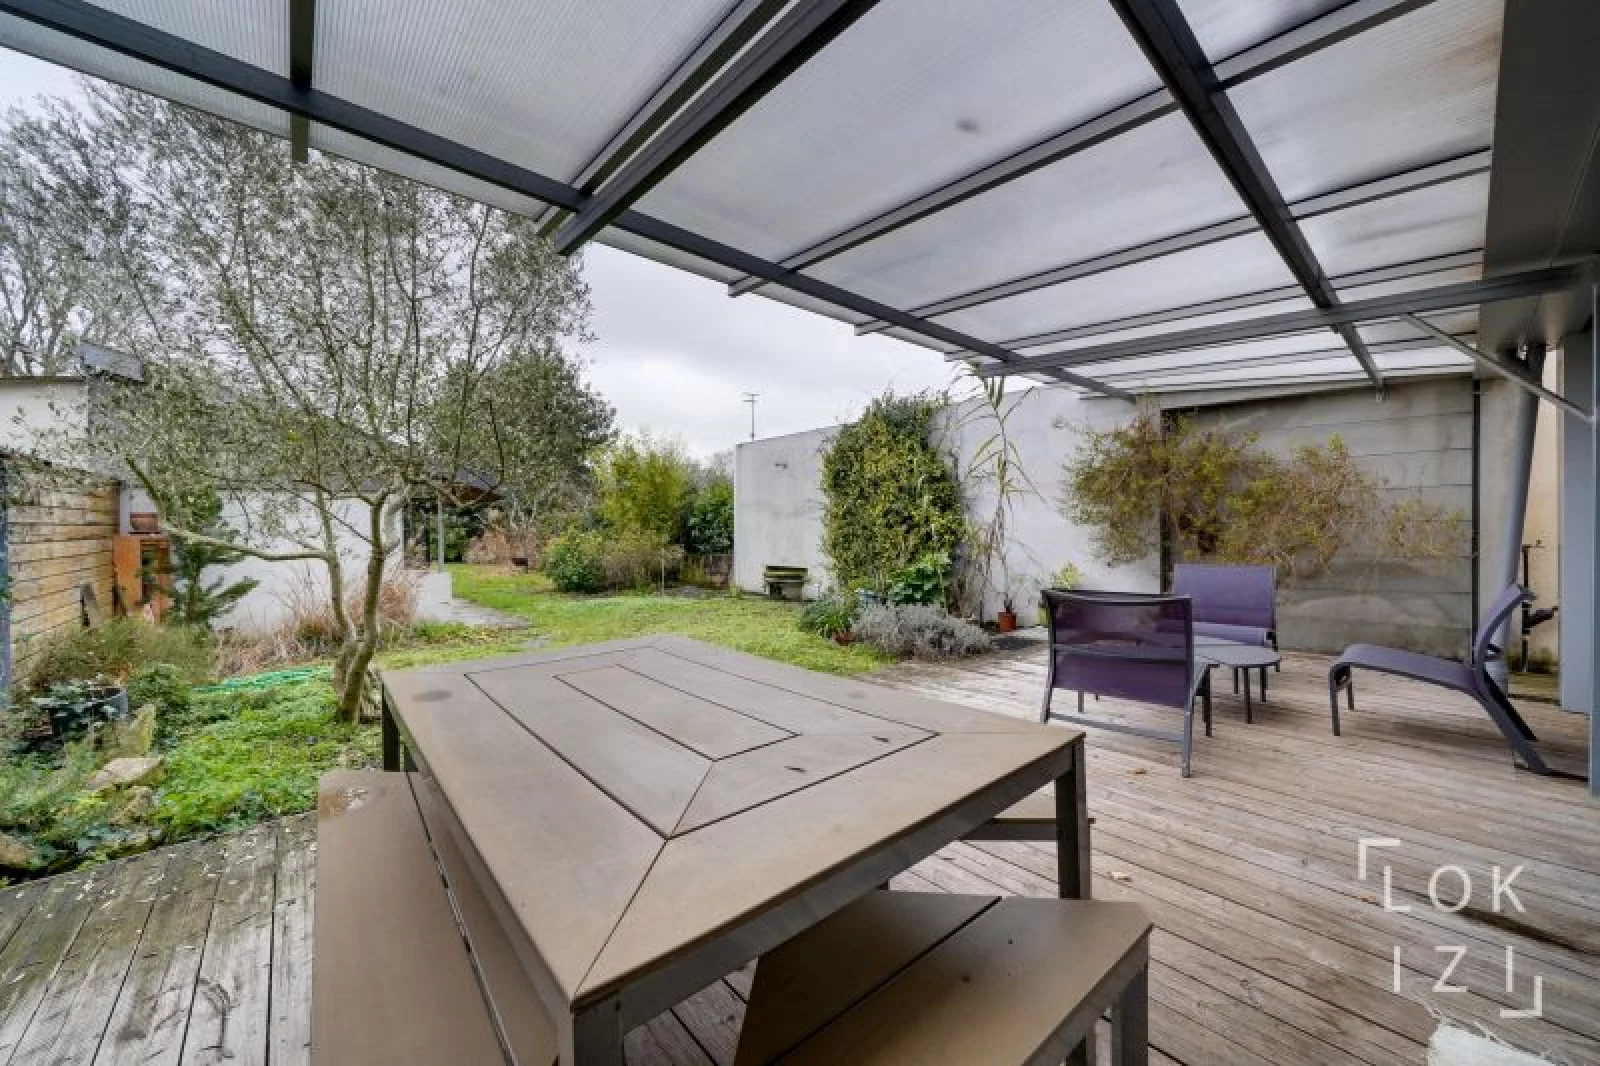 Location maison meublée 140m² + jardin (Bordeaux - Mérignac)